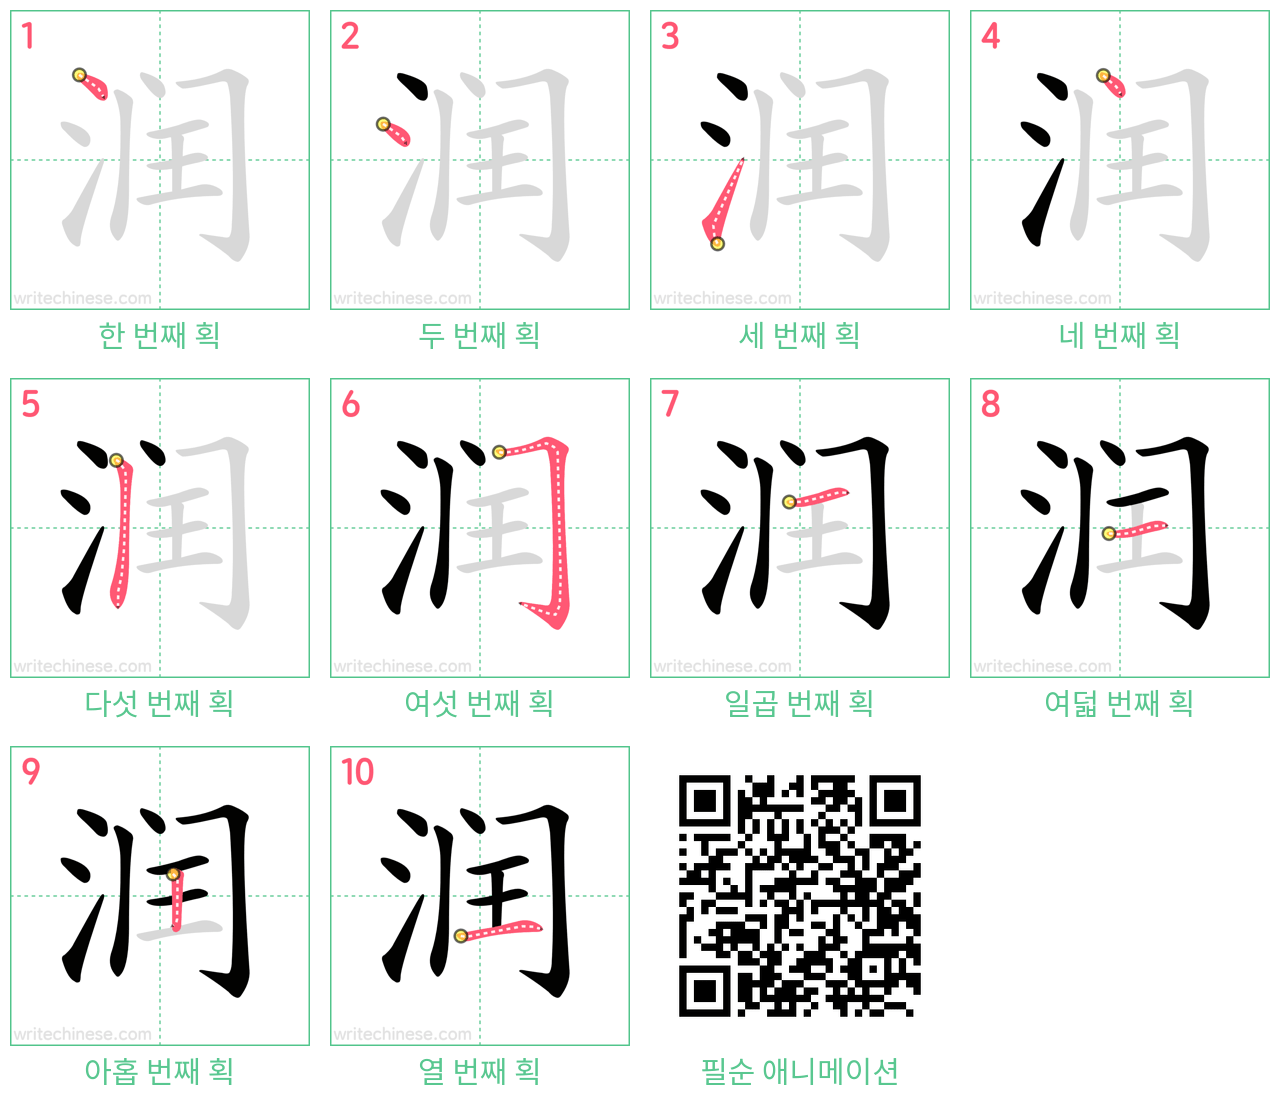 润 step-by-step stroke order diagrams